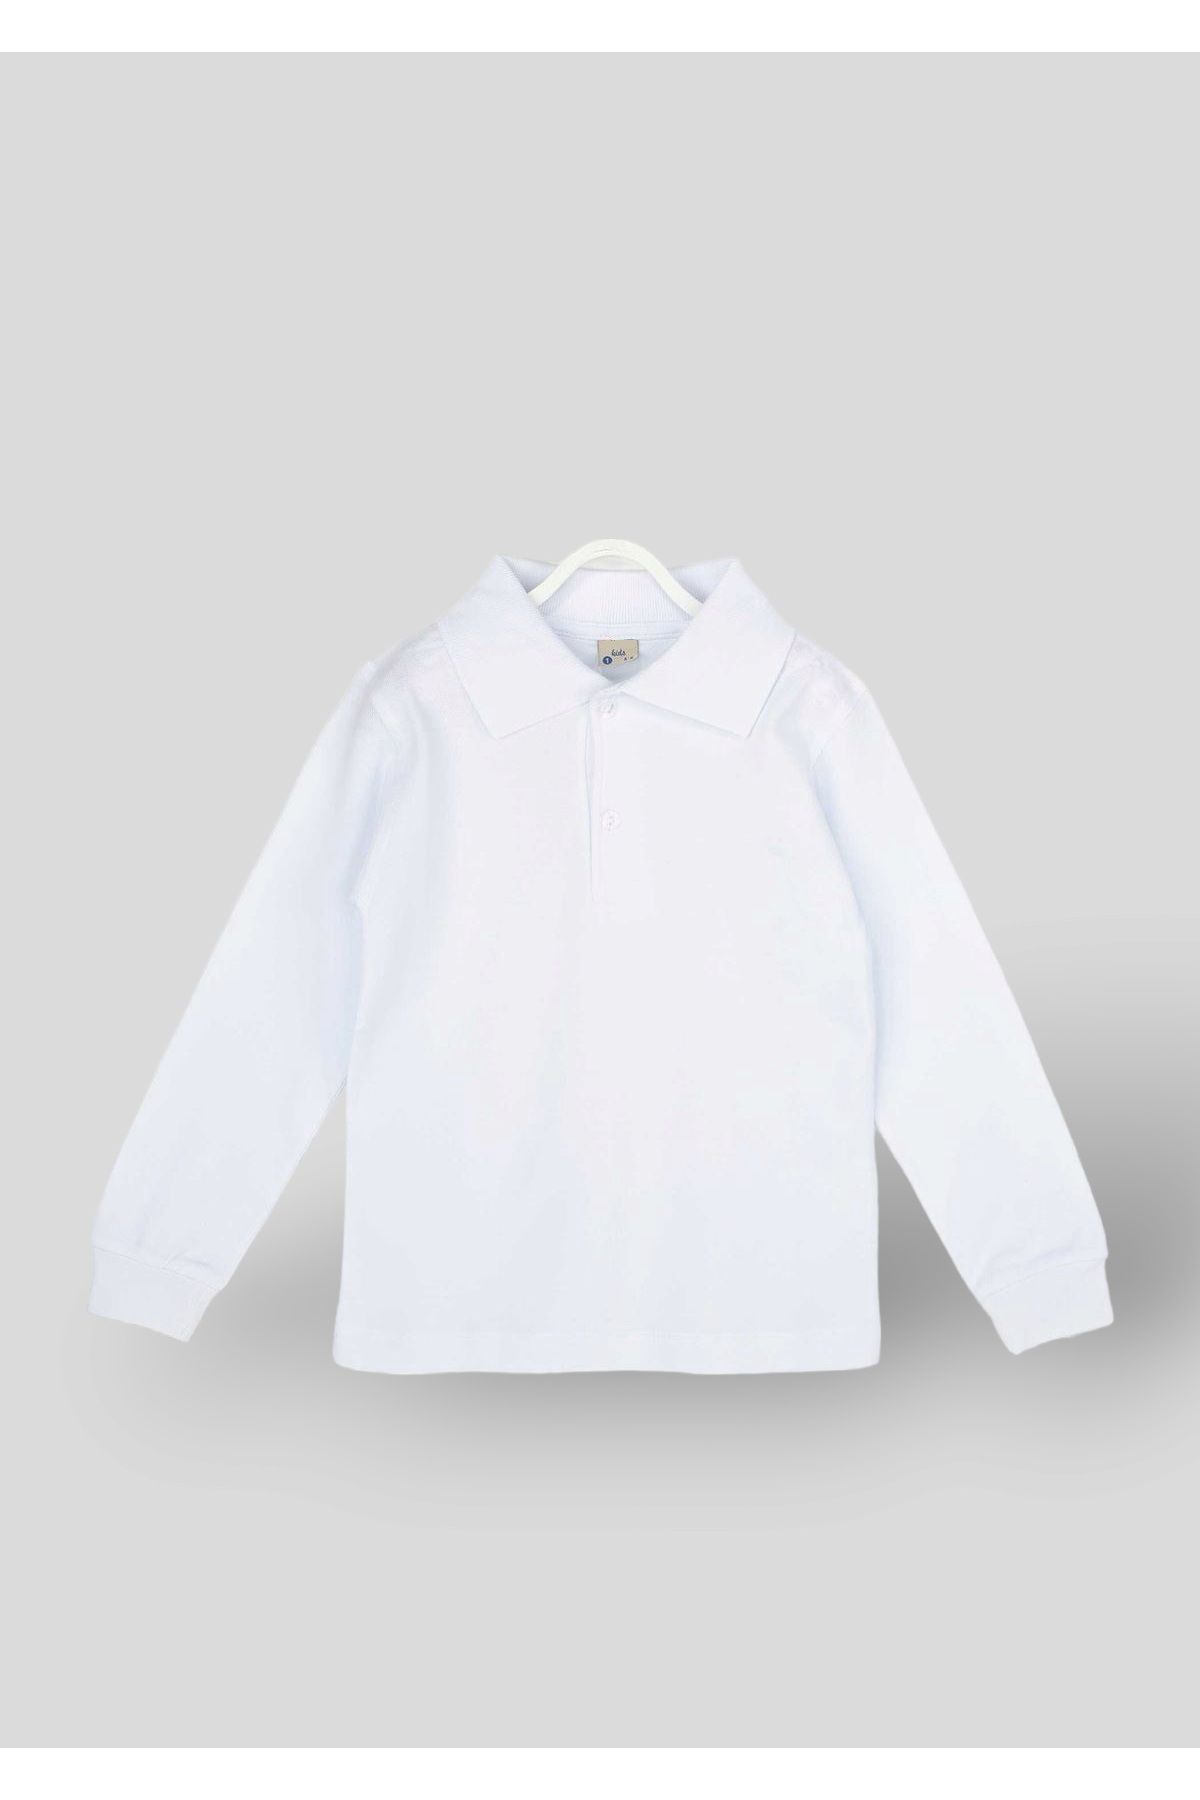 DUDO GİYİM Beyaz Polo Yaka Basic Uzun Kollu Kız Erkek Çocuk Tişört